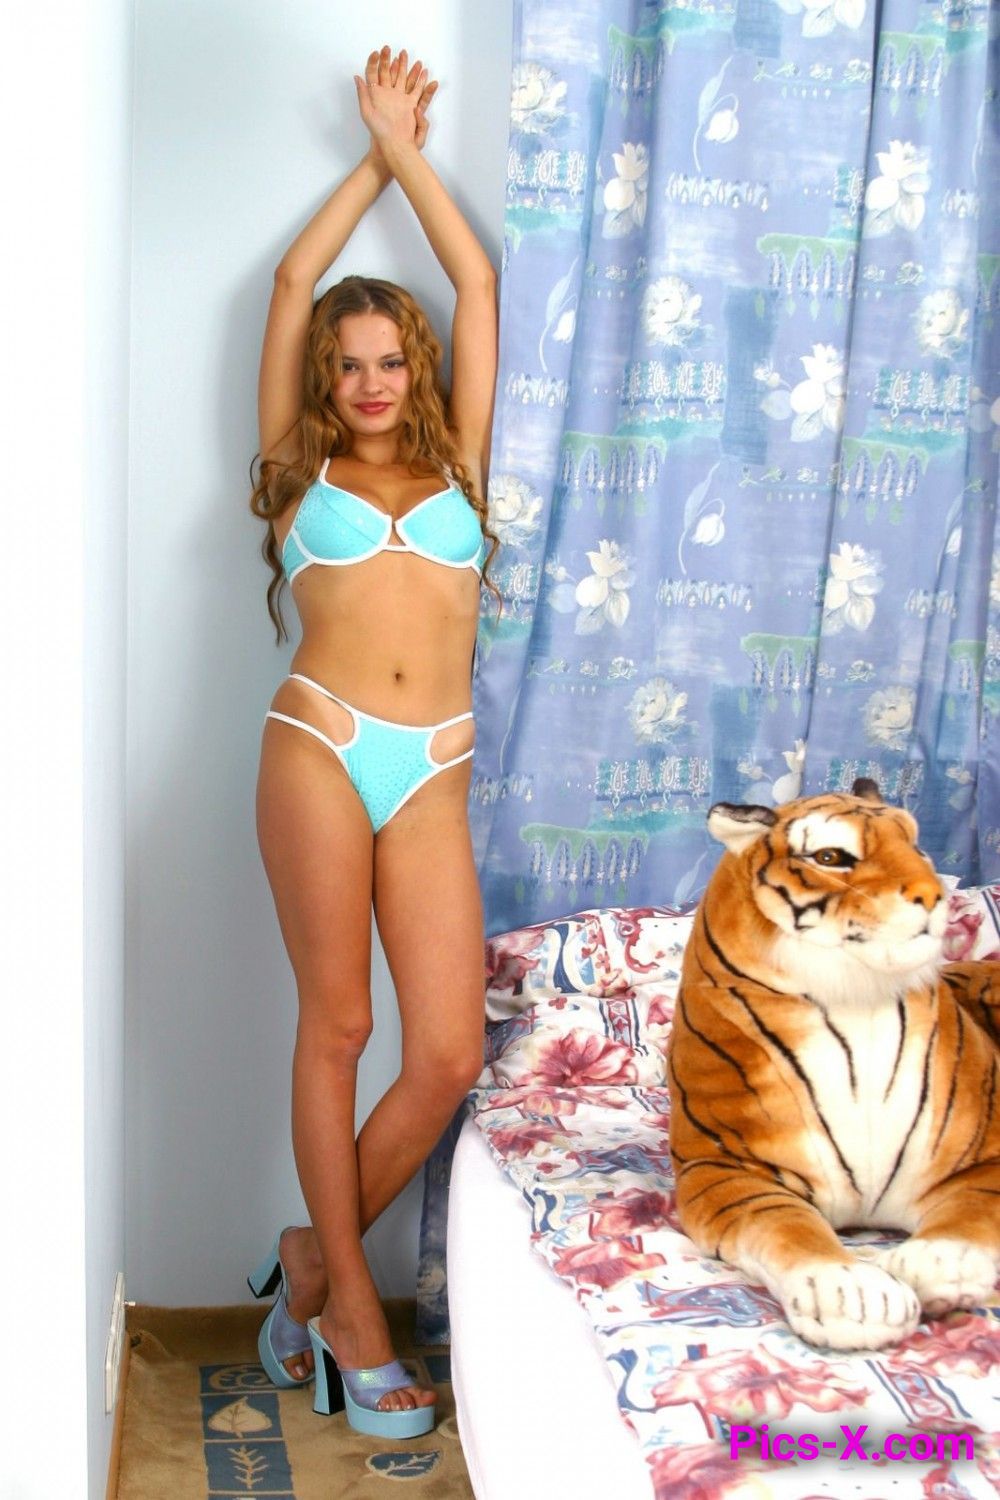 Sara & Her Tiger - Image 1